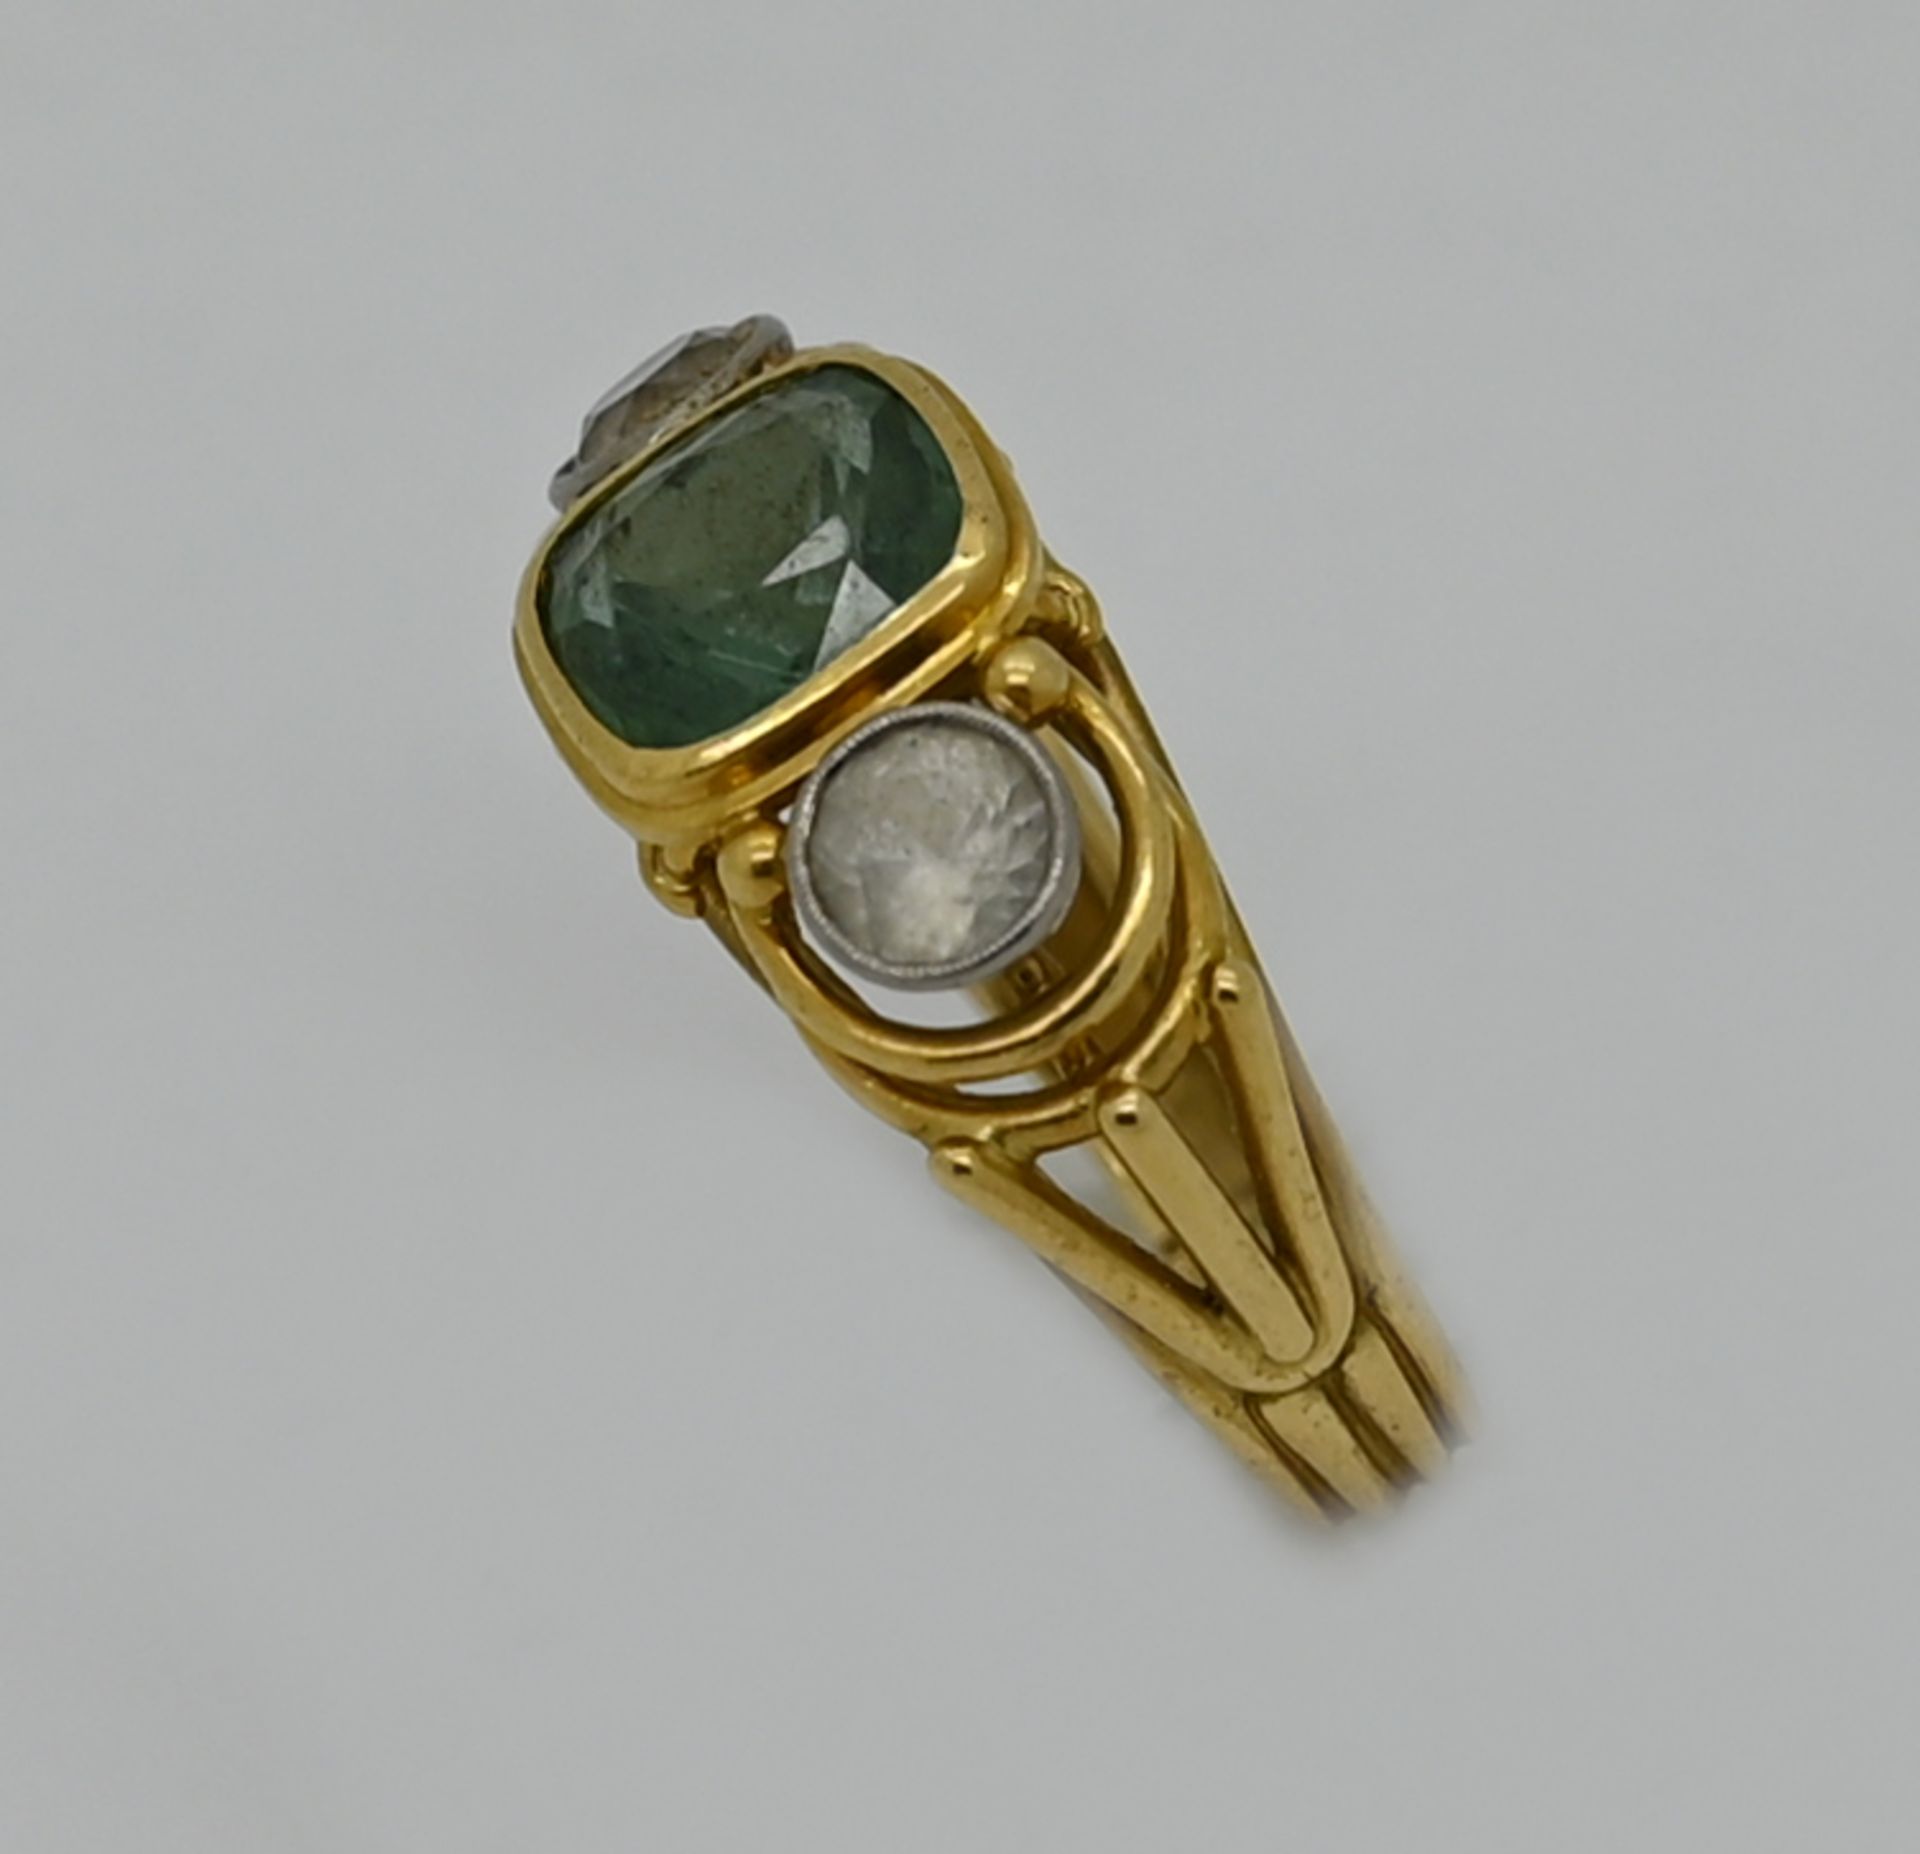 1 Ring GG 18ct., mit grünem Stein und weißen Steinen, Ringgröße ca. 59, Tsp. - Image 2 of 2